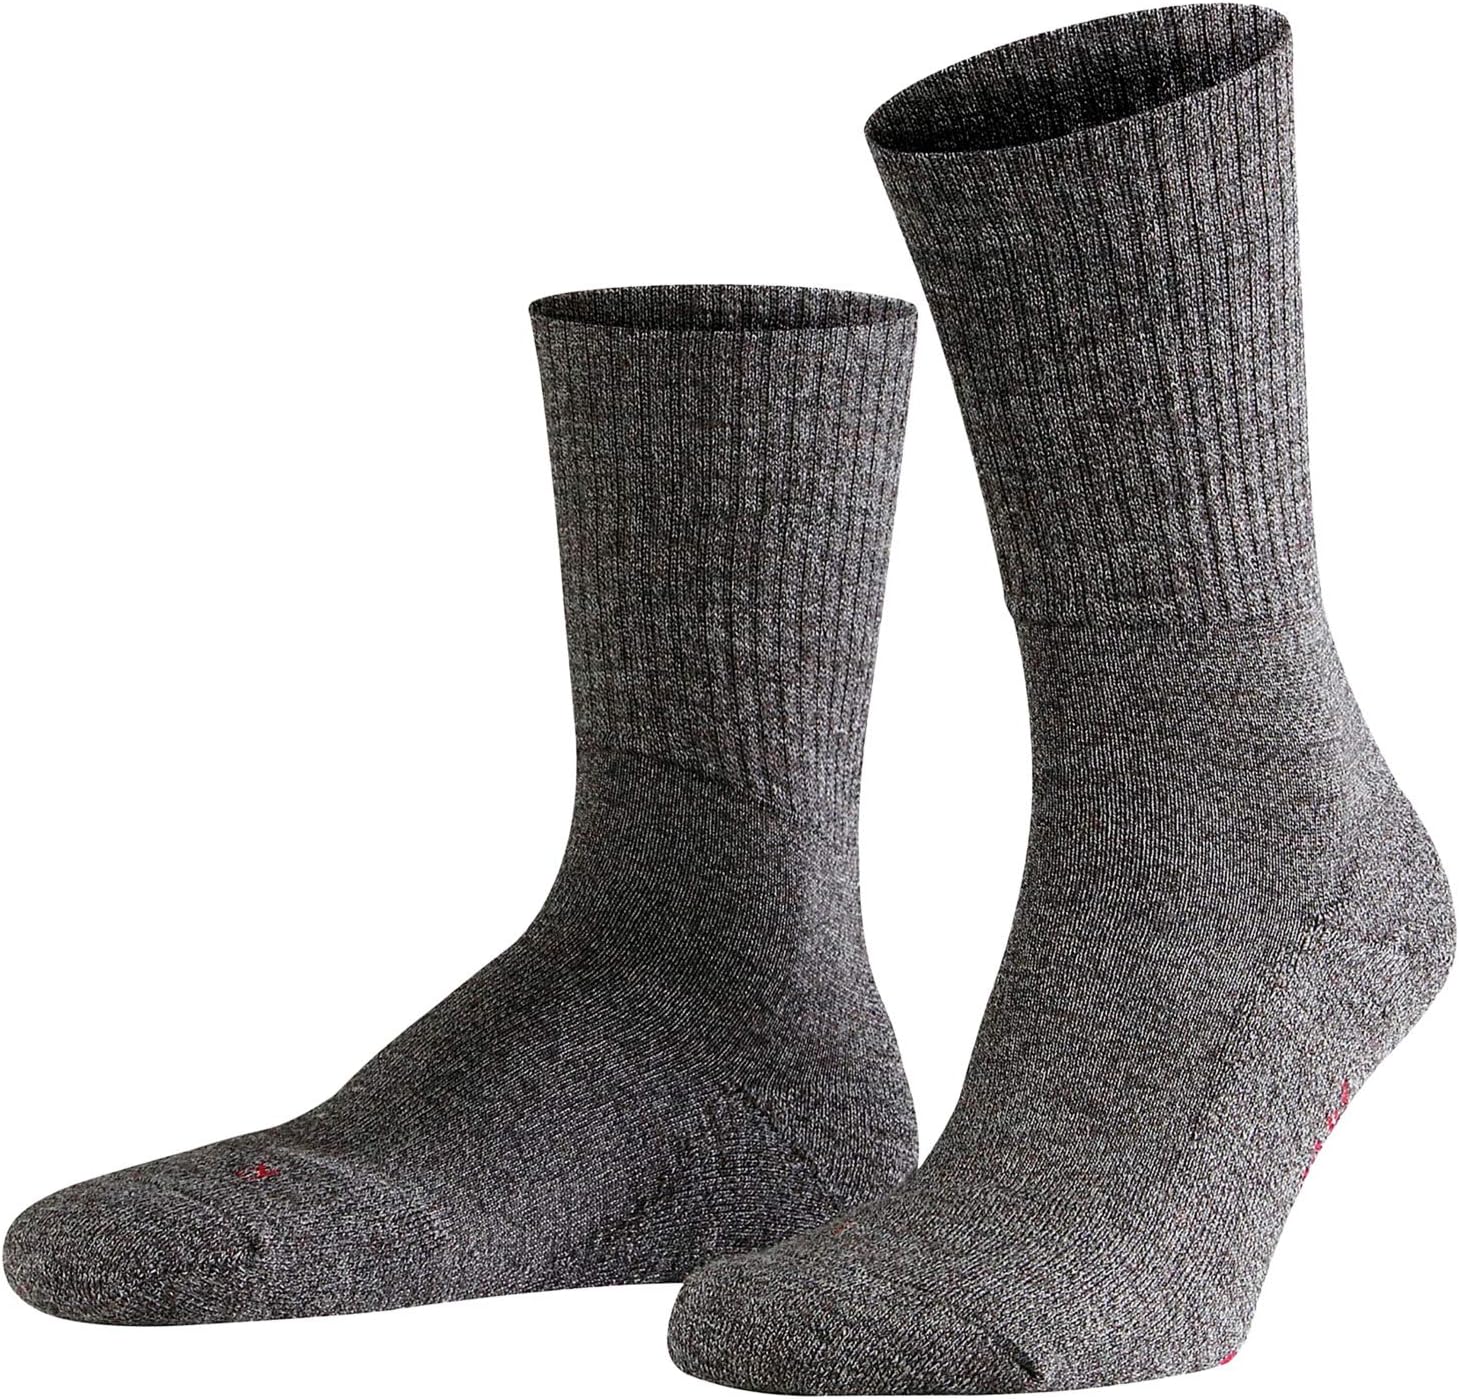 Легкие носки для рации Falke, цвет Smog легкие носки для рации falke цвет light denim